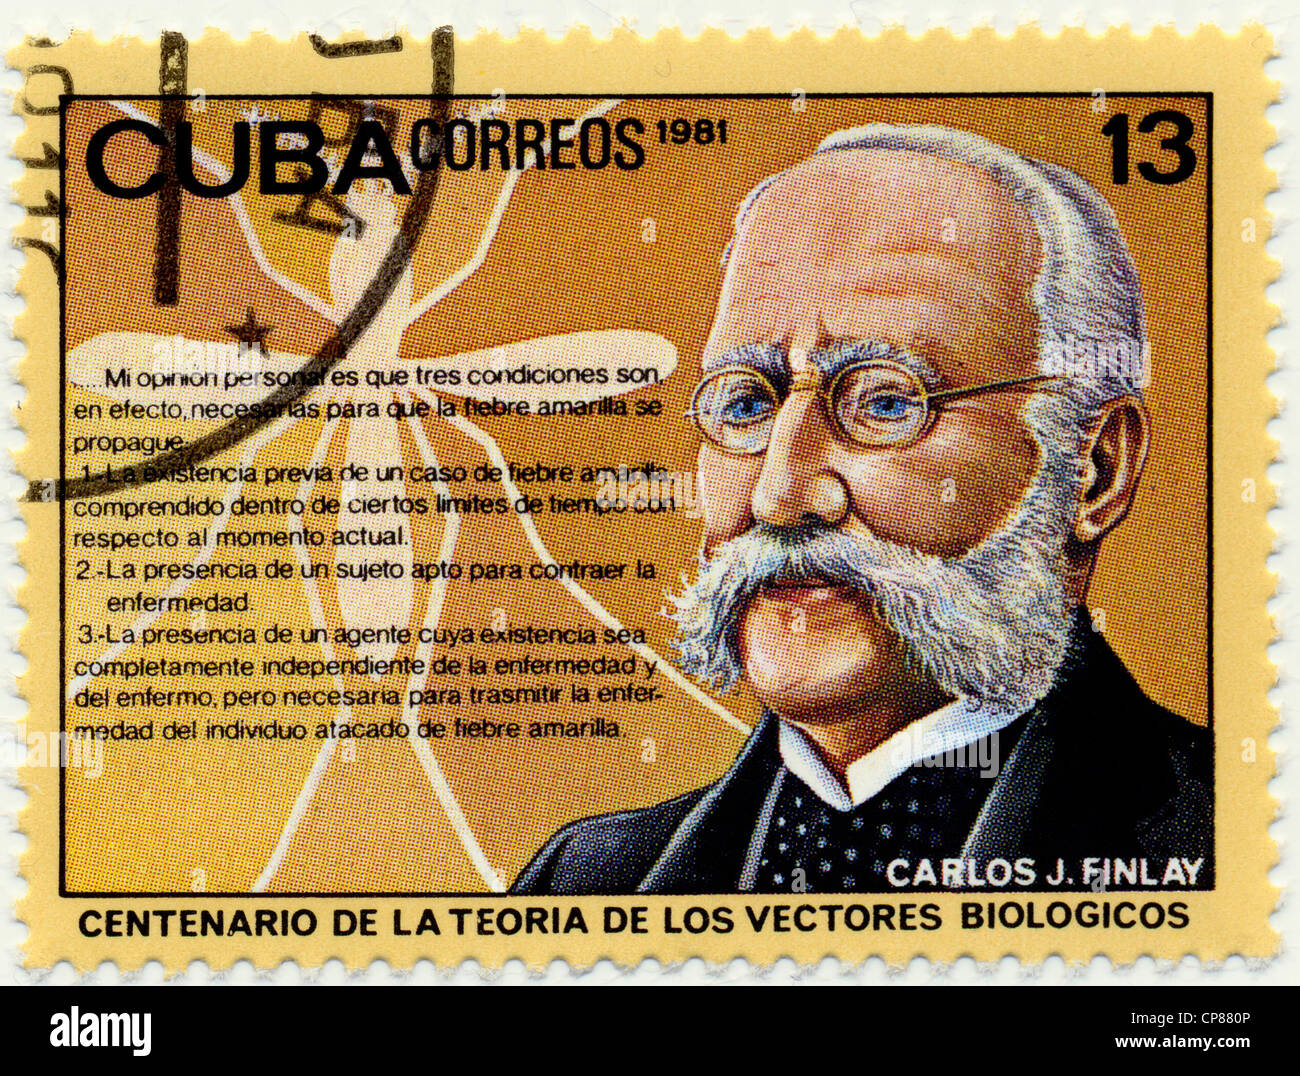 Historic postage stamps from Cuba, Historische Briefmarken, Carlos Juan Finlay de Barres, 1981, Kuba, Karibik Stock Photo